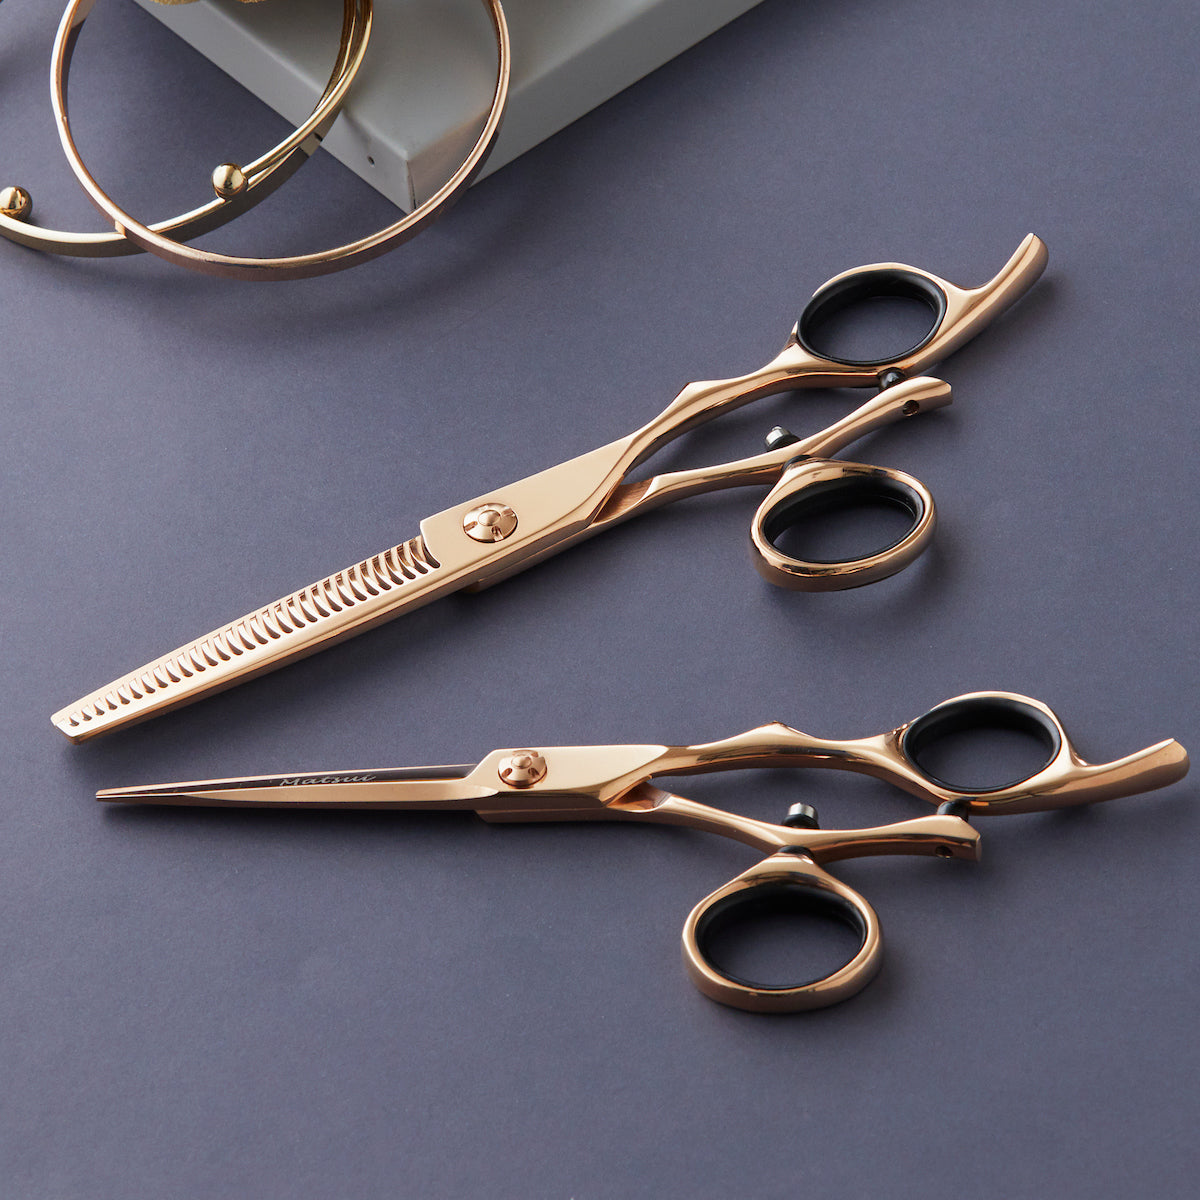 Swivel vs non-swivel hair scissors